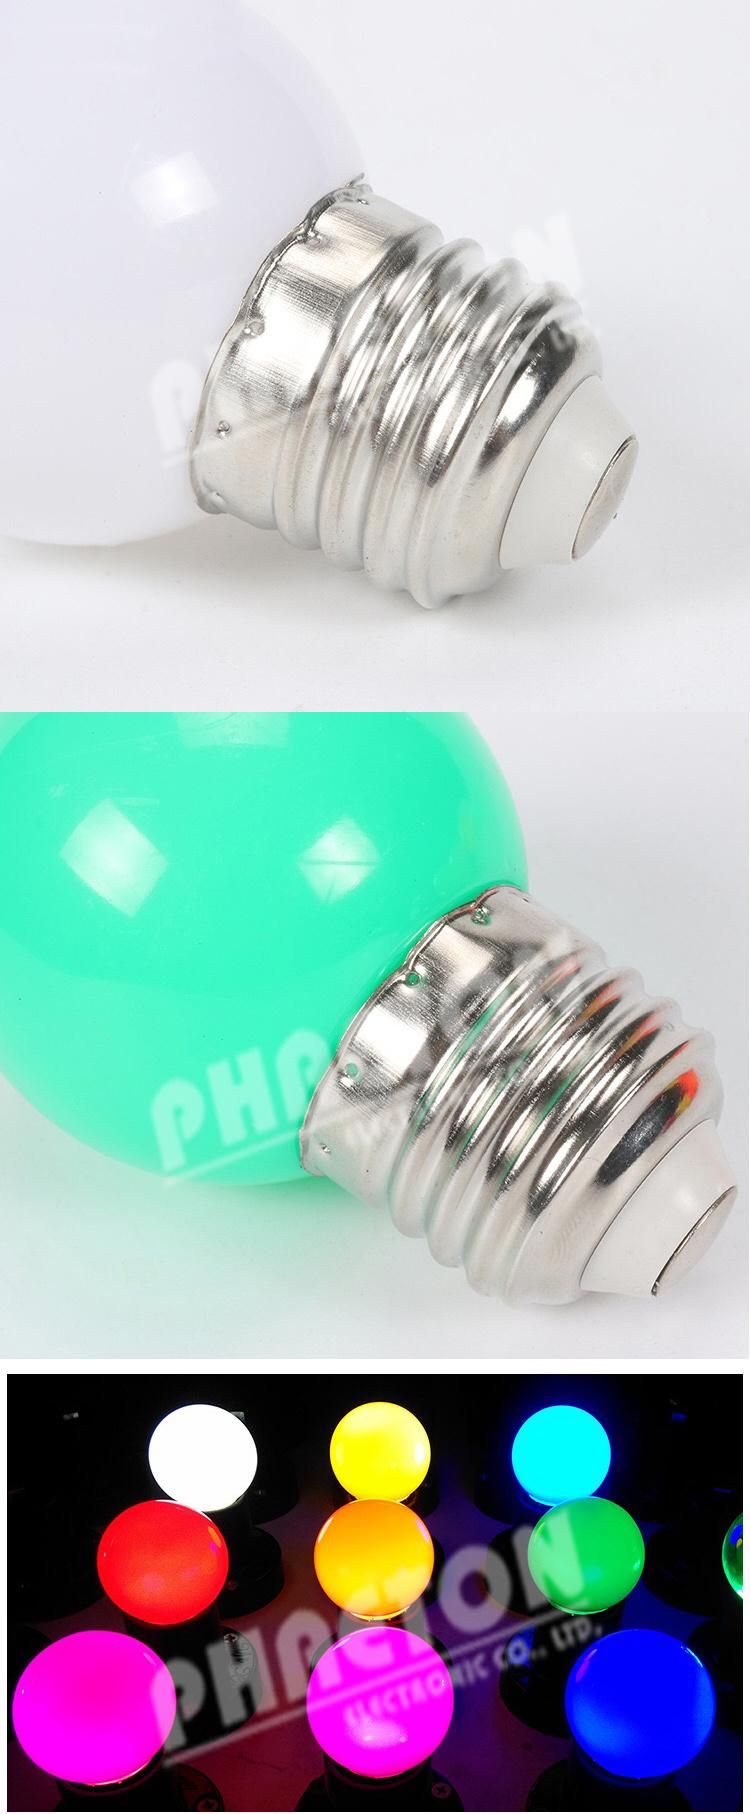 1W 3W G45 LED Color Bulb, Holiday Christmas Light